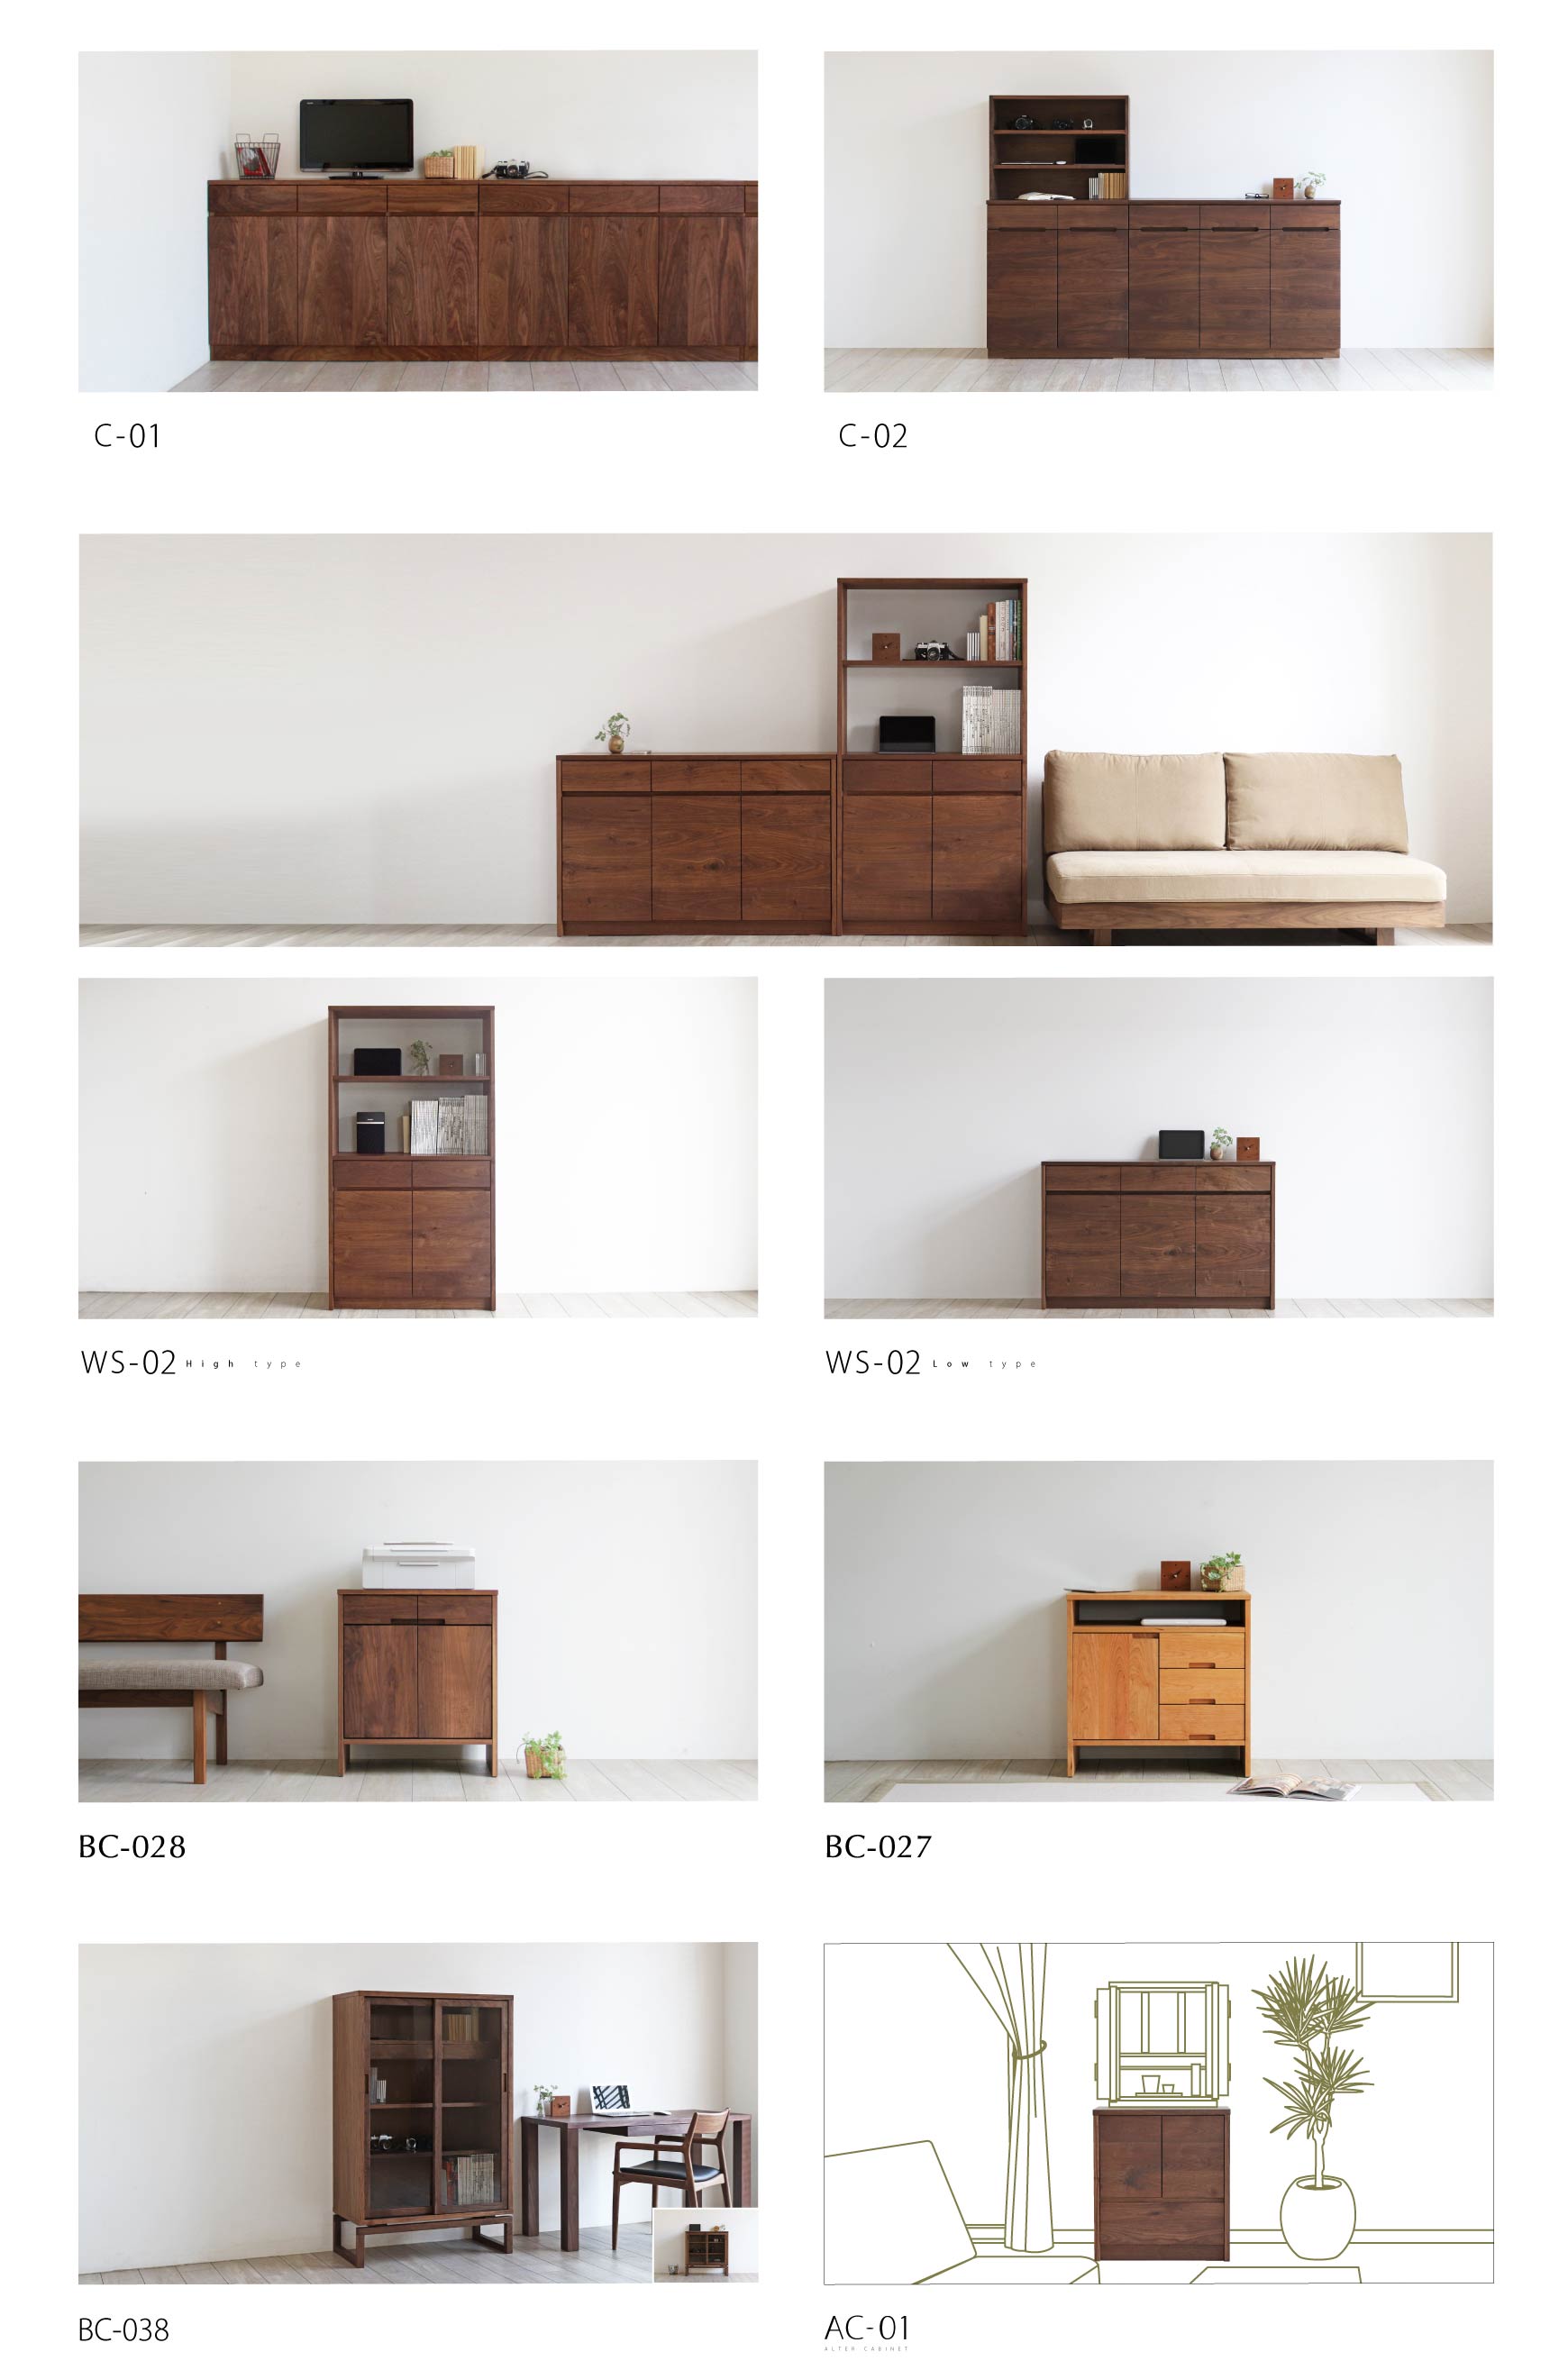 日本の職人が丁寧につくり上げる上質な収納家具